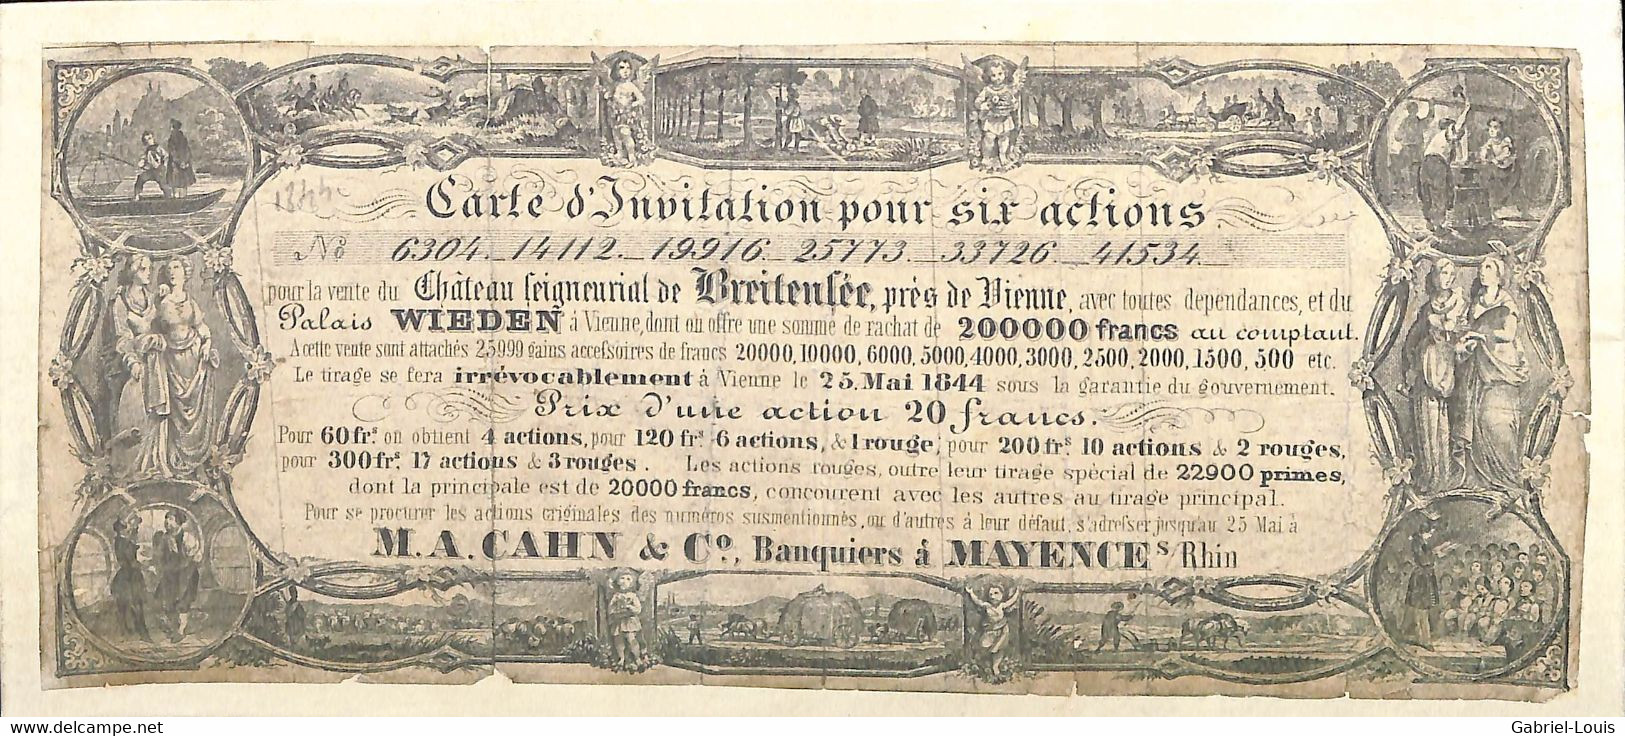 Carte D'invitation Pour Six Actions Vente Du Château De Breitensée Wien Palais Wieden Östereich Banque Mayence 1844 - Non Classés